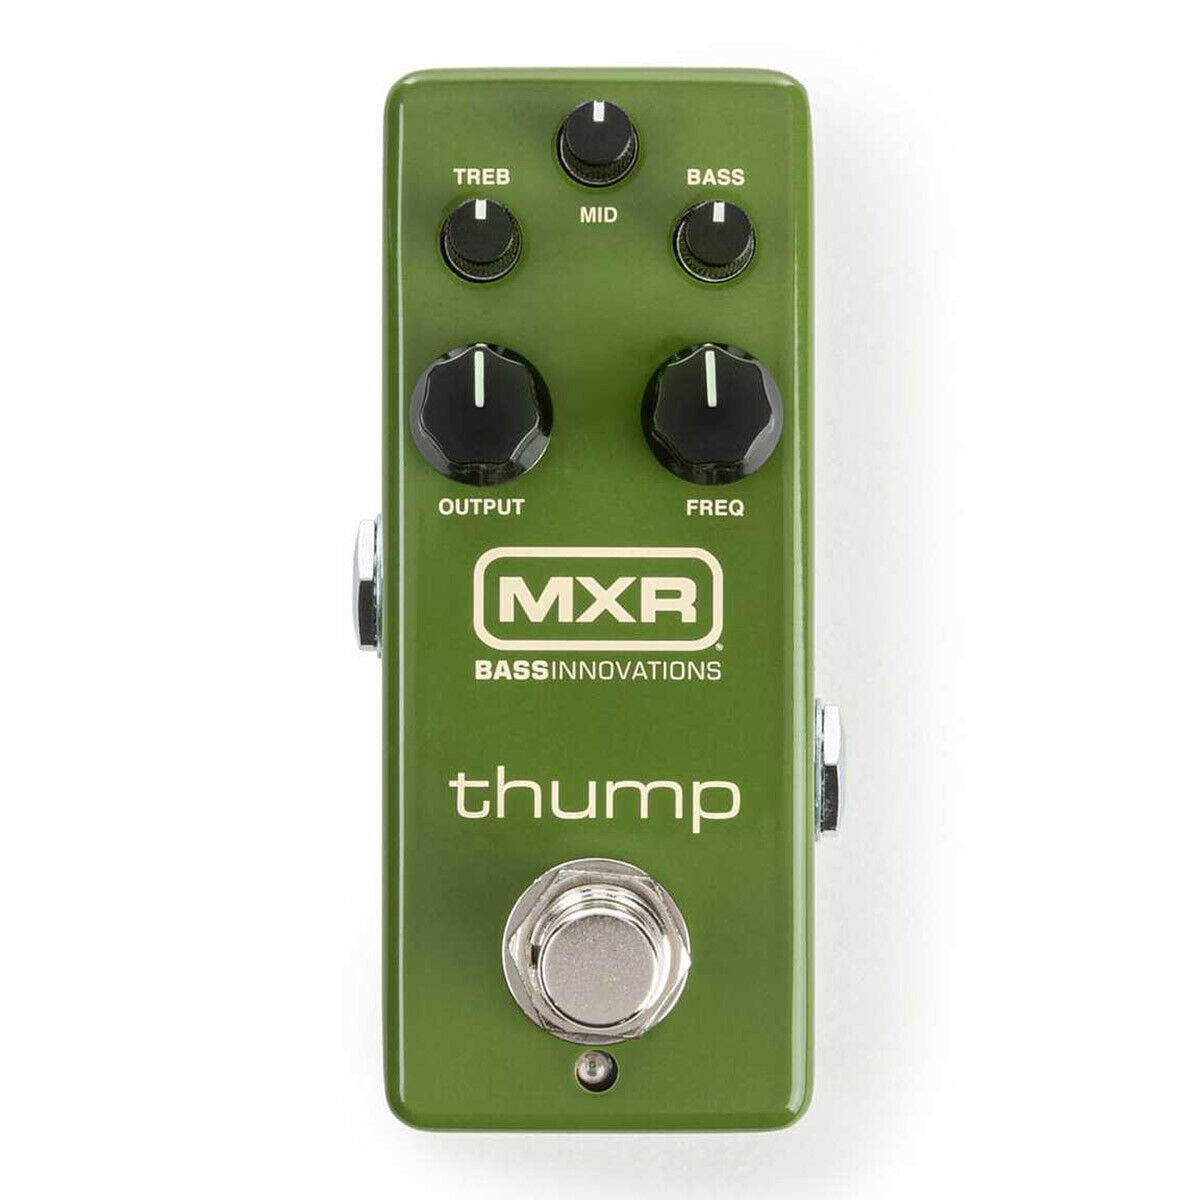 Mxr M281 Thump Bass Guitar Preamp Eq Compact Mini Bass Effects Pedal